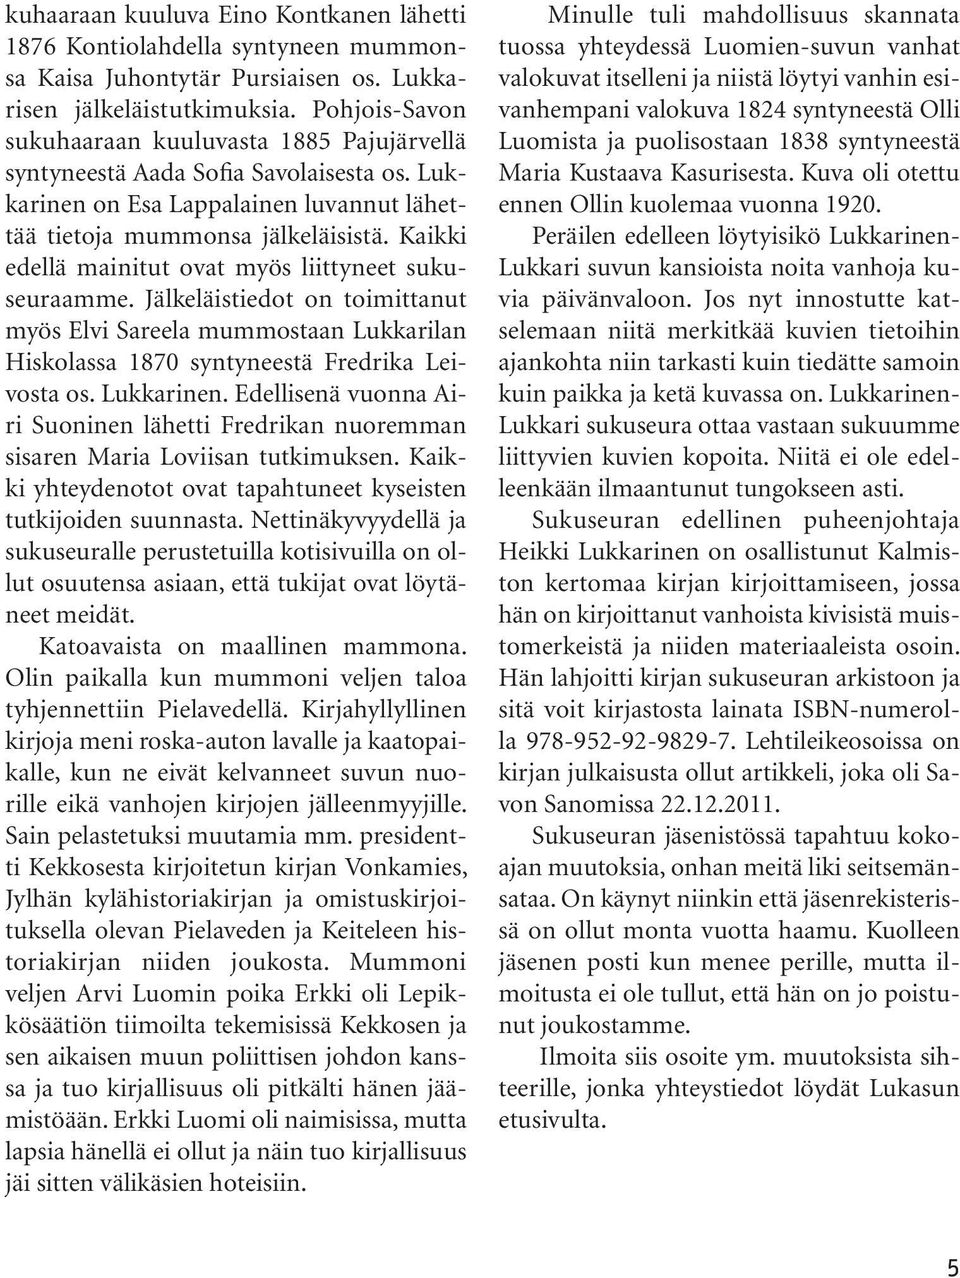 Kaikki edellä mainitut ovat myös liittyneet sukuseuraamme. Jälkeläistiedot on toimittanut myös Elvi Sareela mummostaan Lukkarilan Hiskolassa 1870 syntyneestä Fredrika Leivosta os. Lukkarinen.